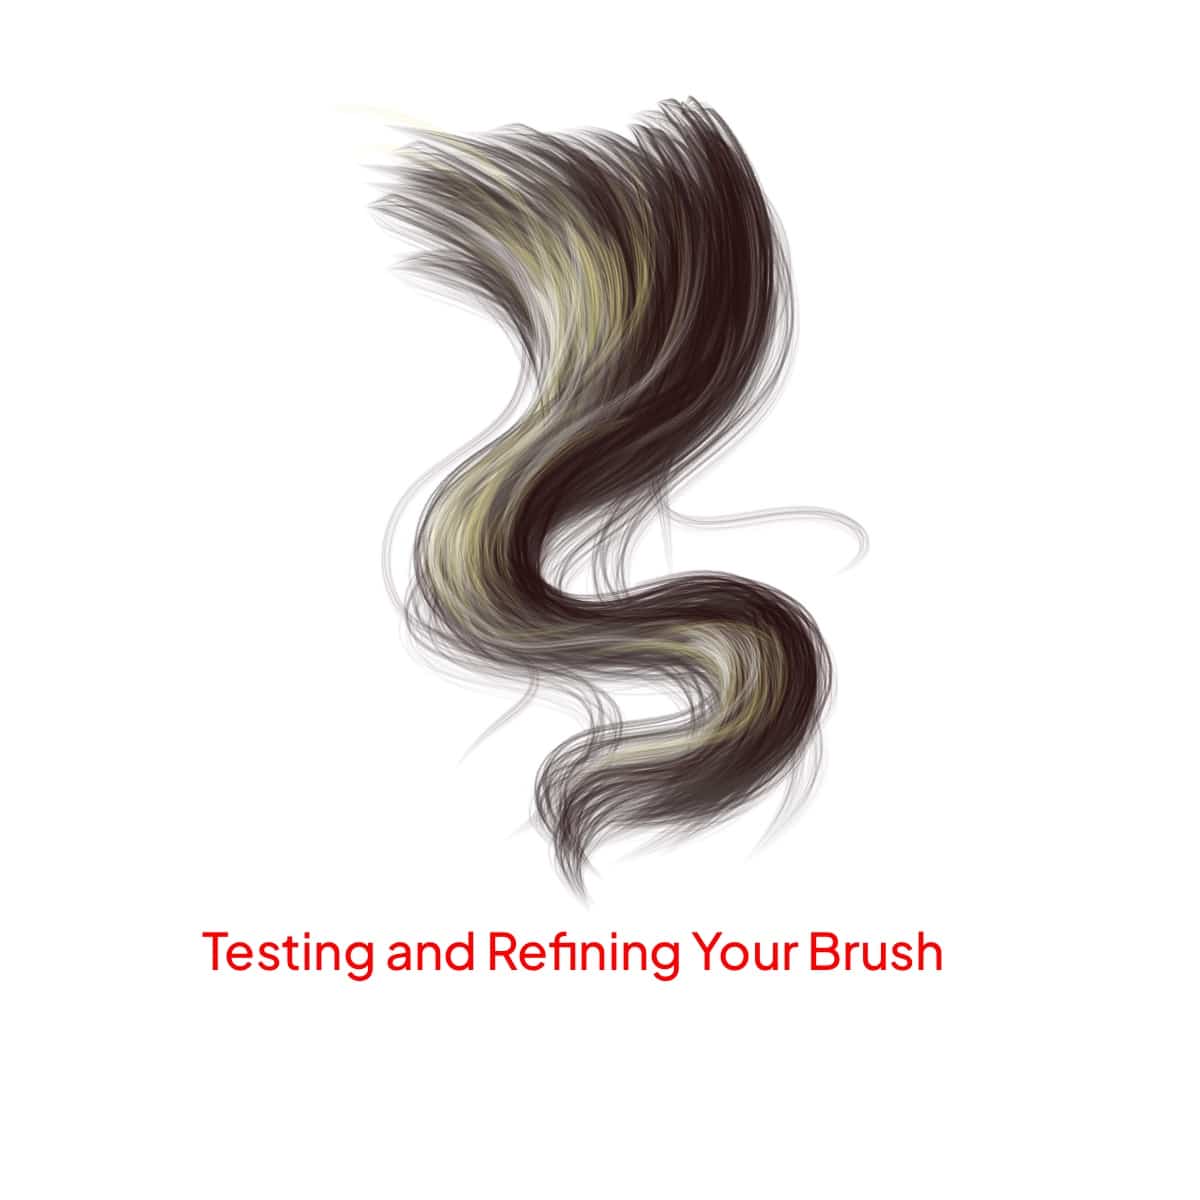 Testing your brush